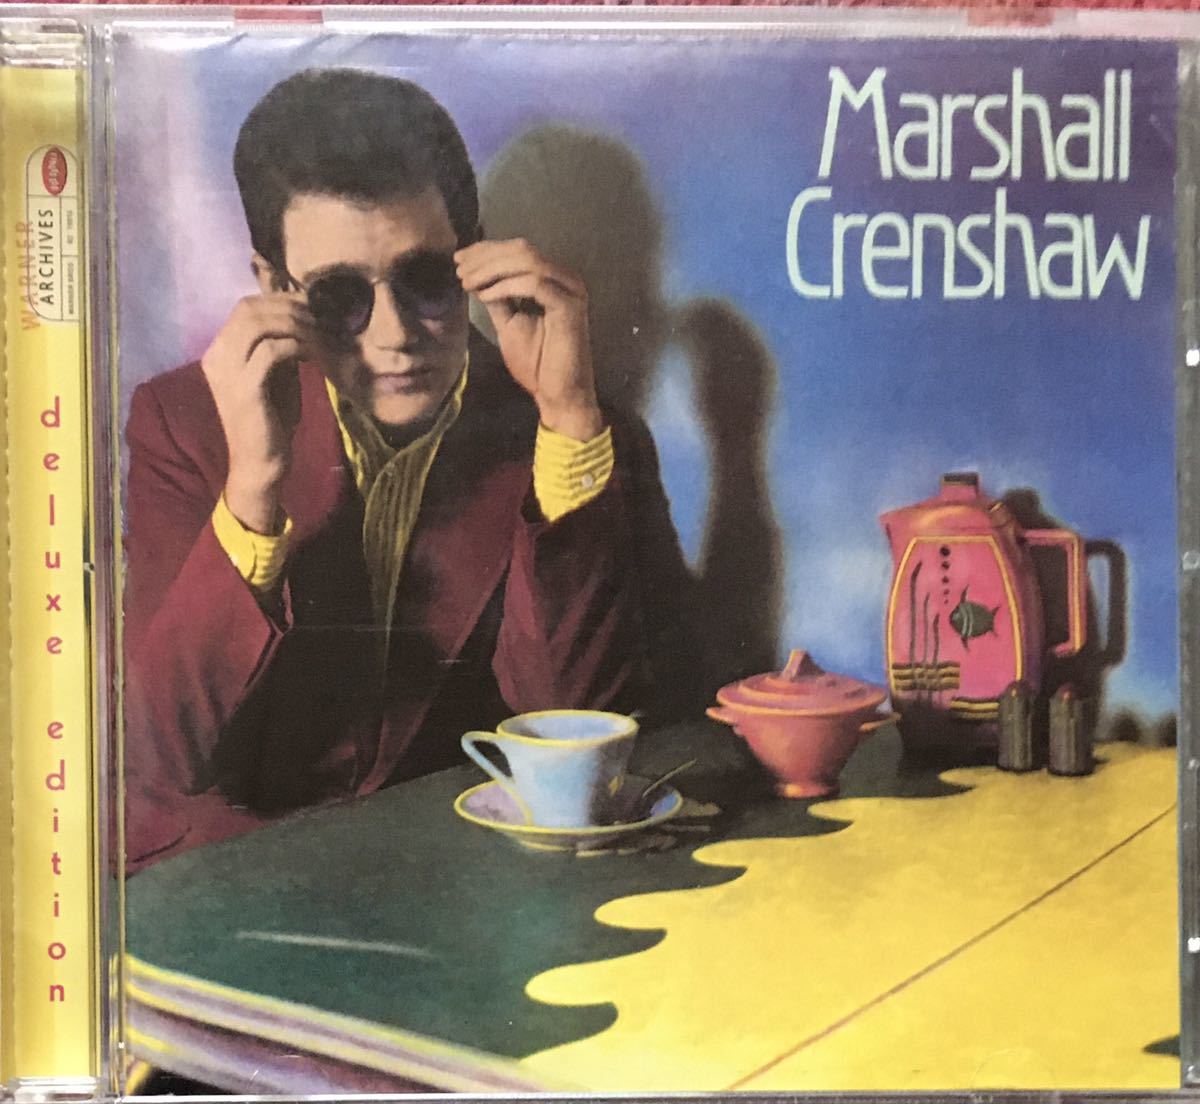 Marshall Crenshaw/唯一無二のポップ職人82年傑作1stにボートラ9曲追加したDXエディション!パワーポップ/ギターポップ/パブロック/New Wave_画像1